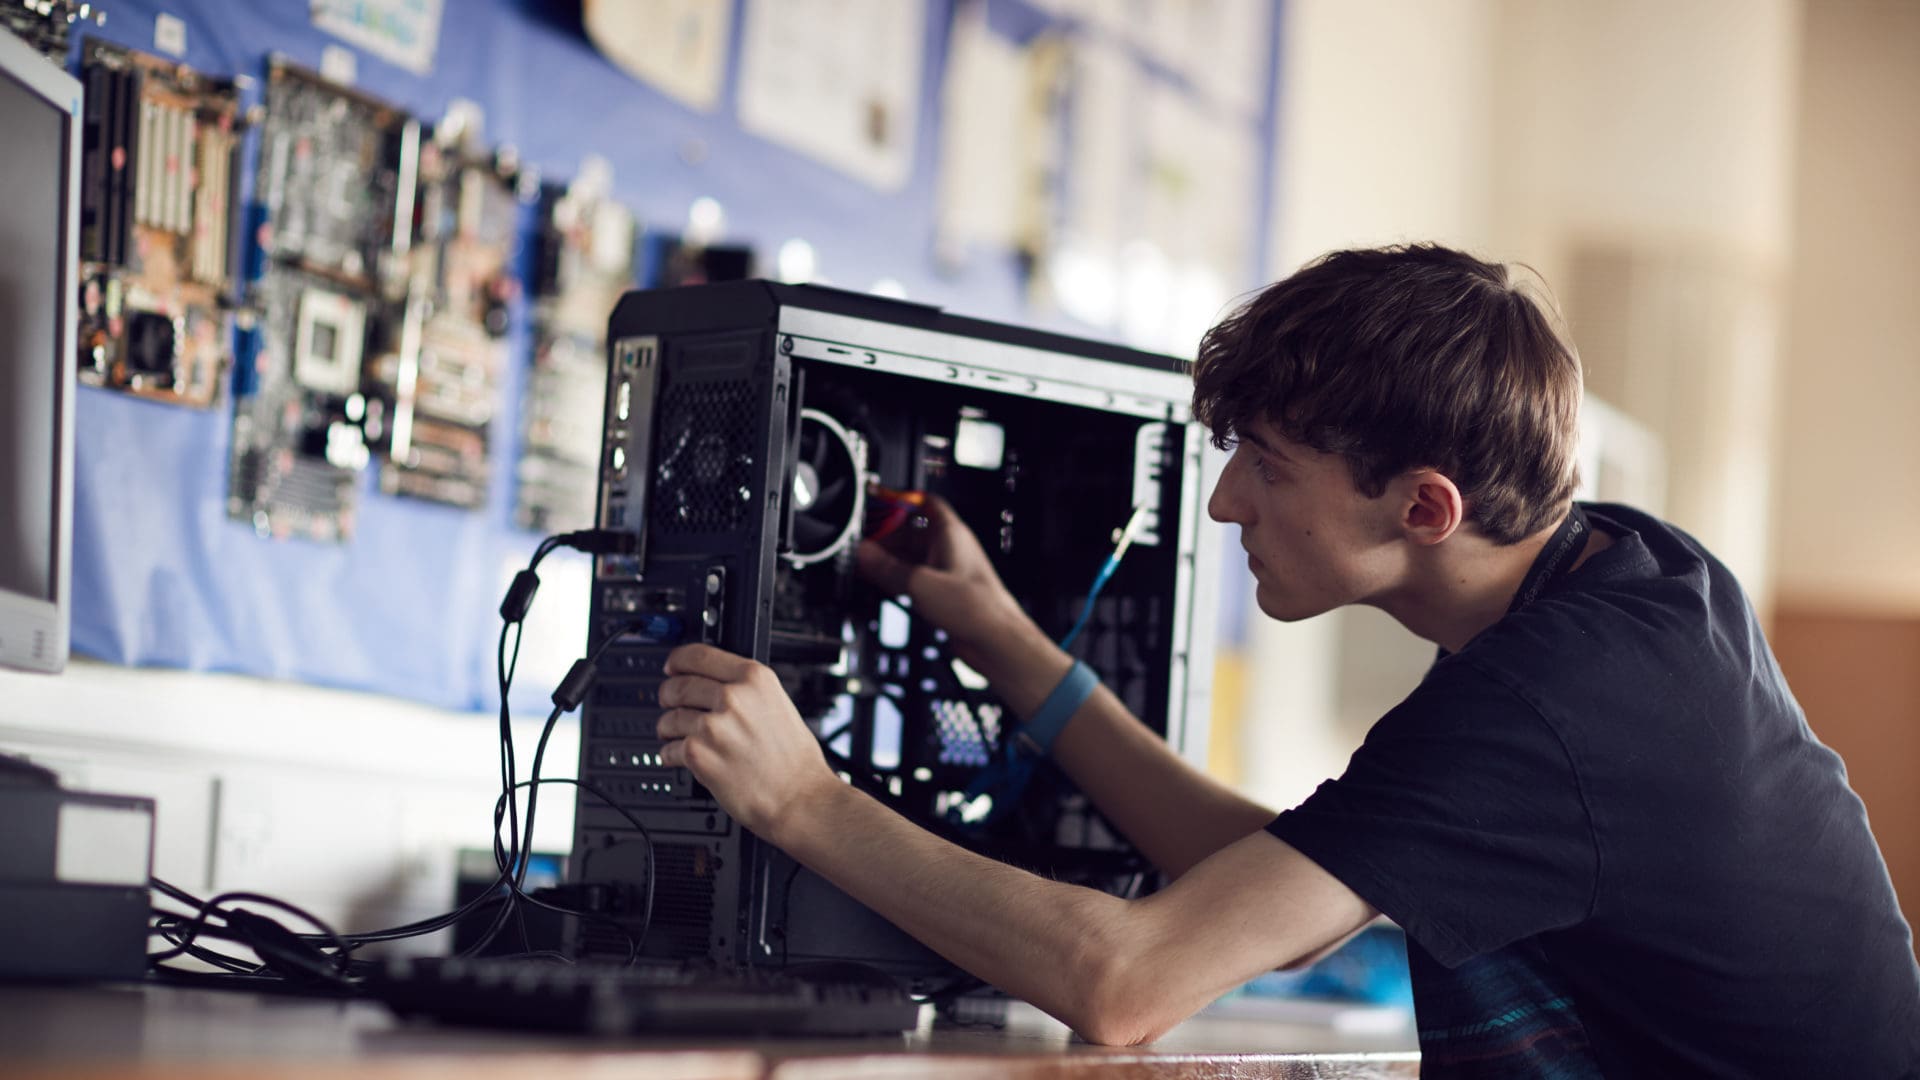 鶹 student focusing on fixing a computer on an IT course